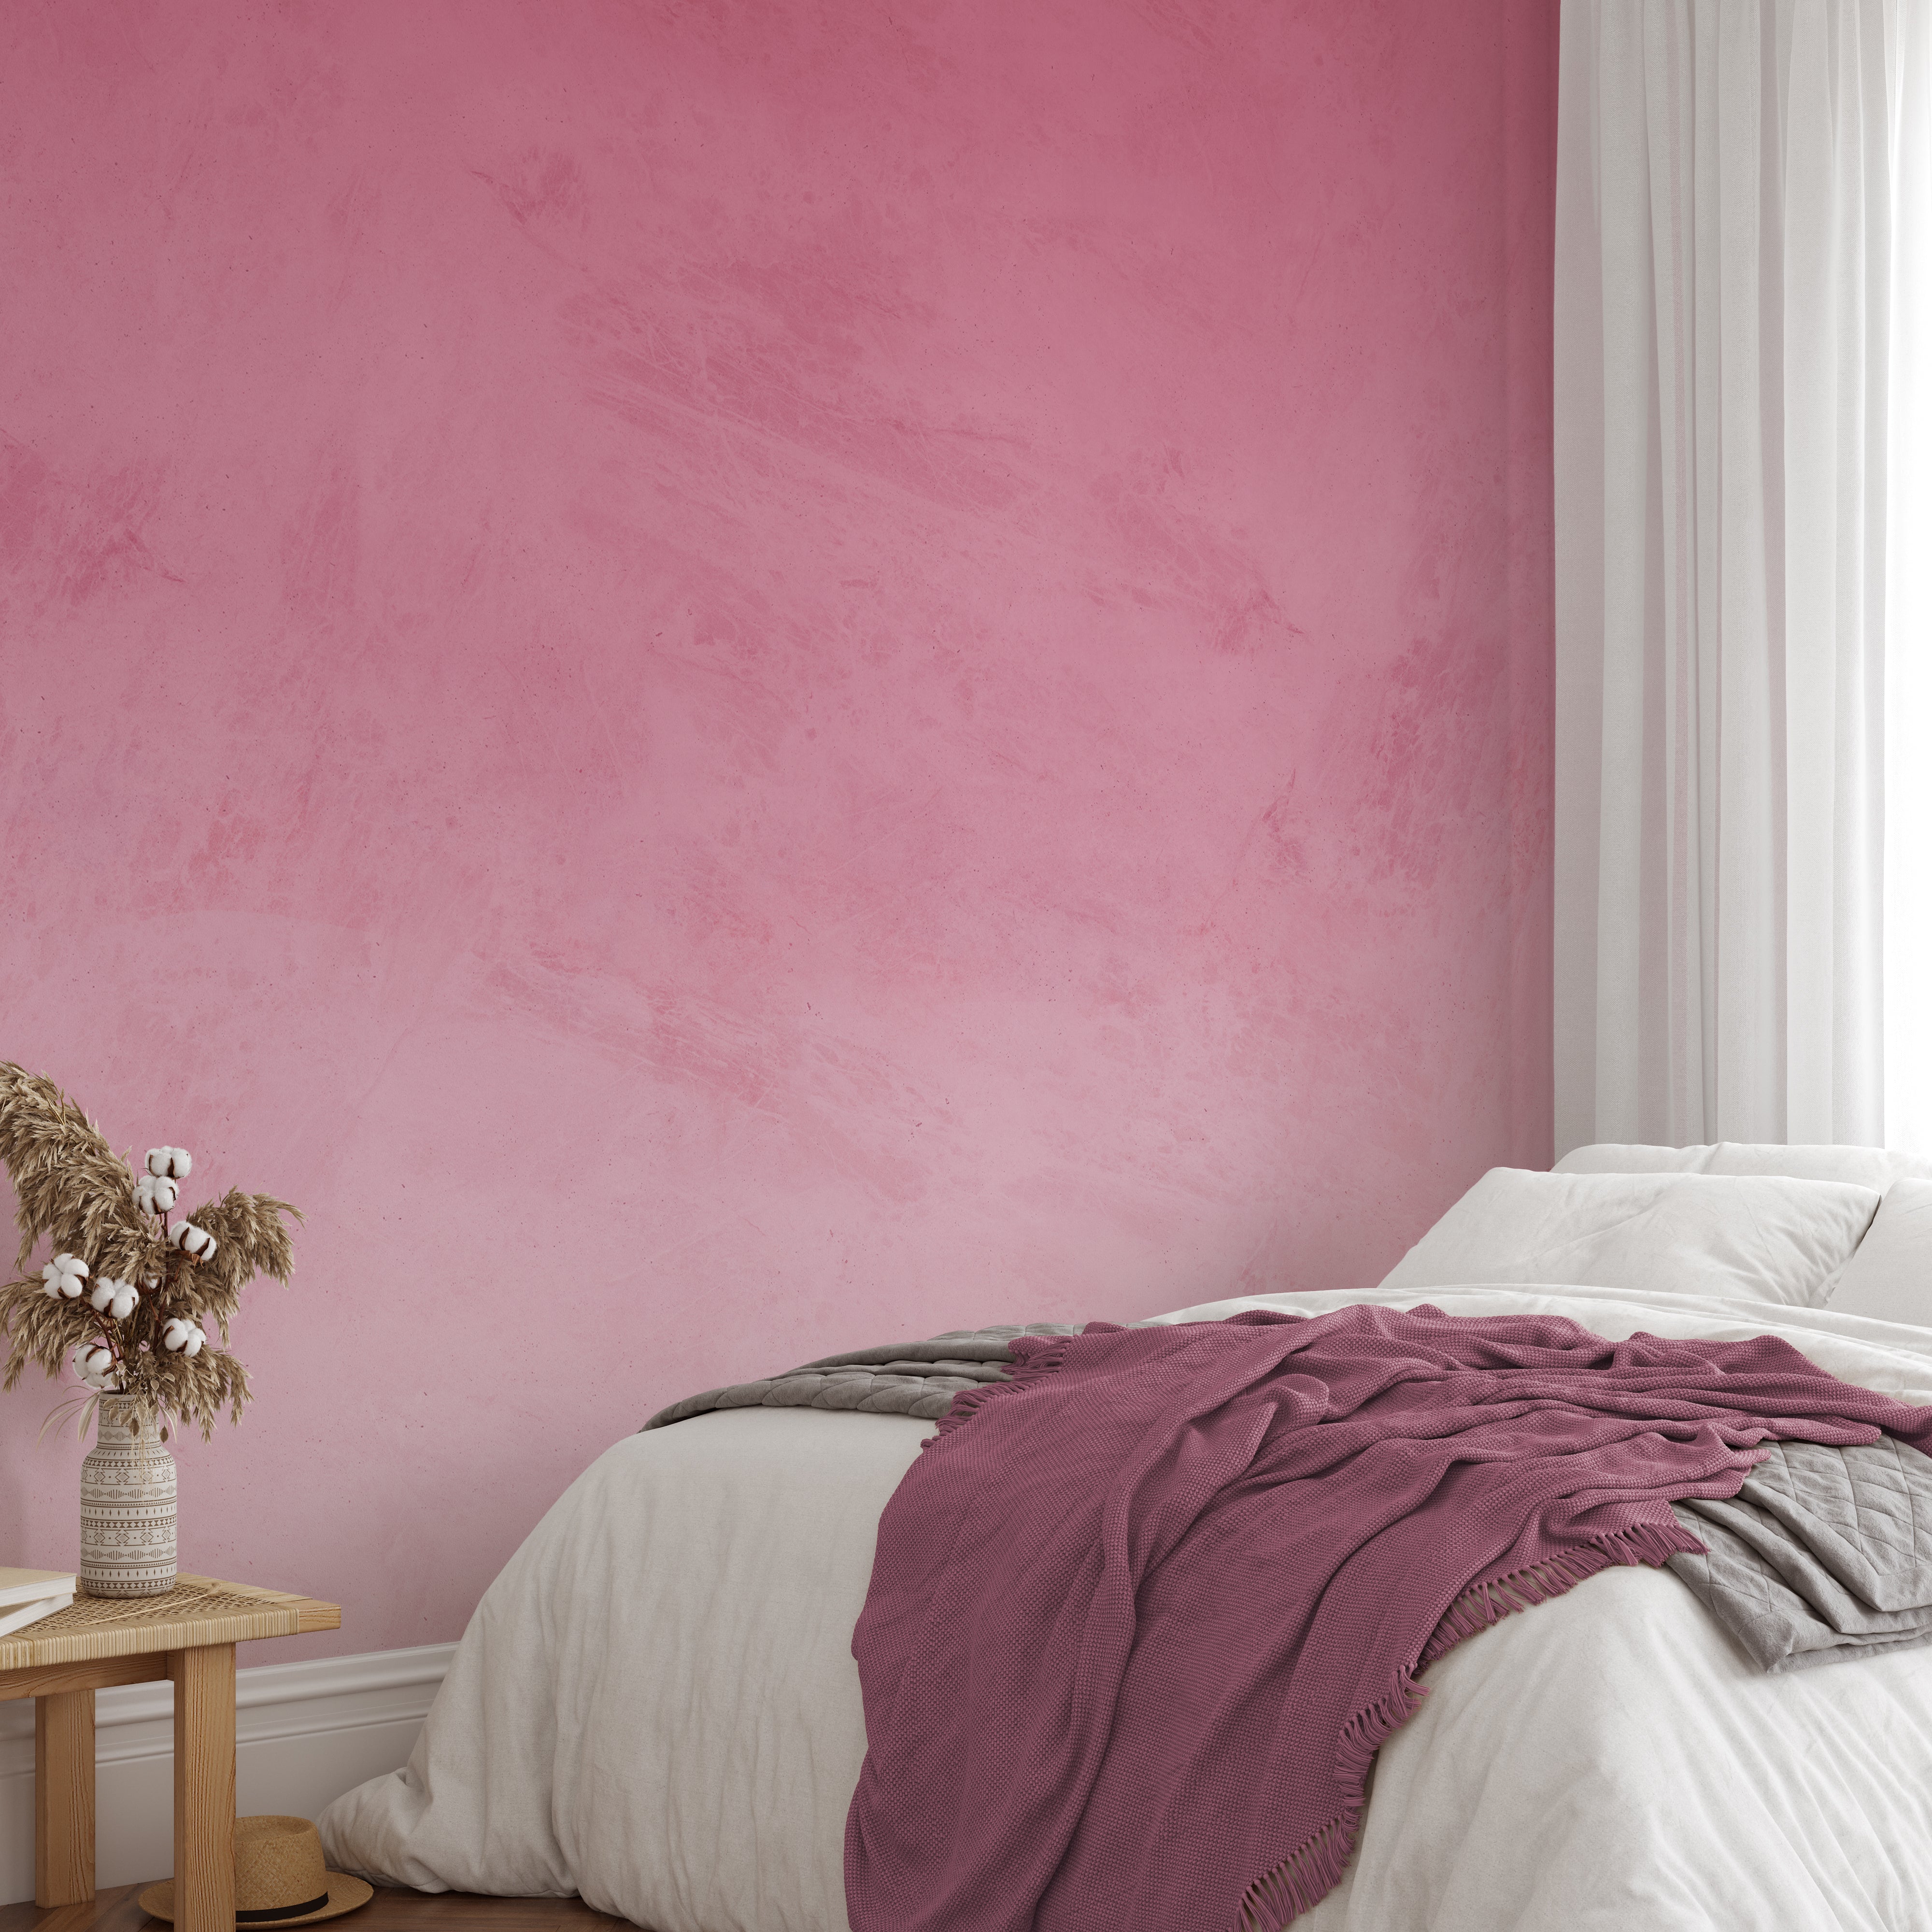 Rosemary Wallpaper - Wall Blush from WALL BLUSH